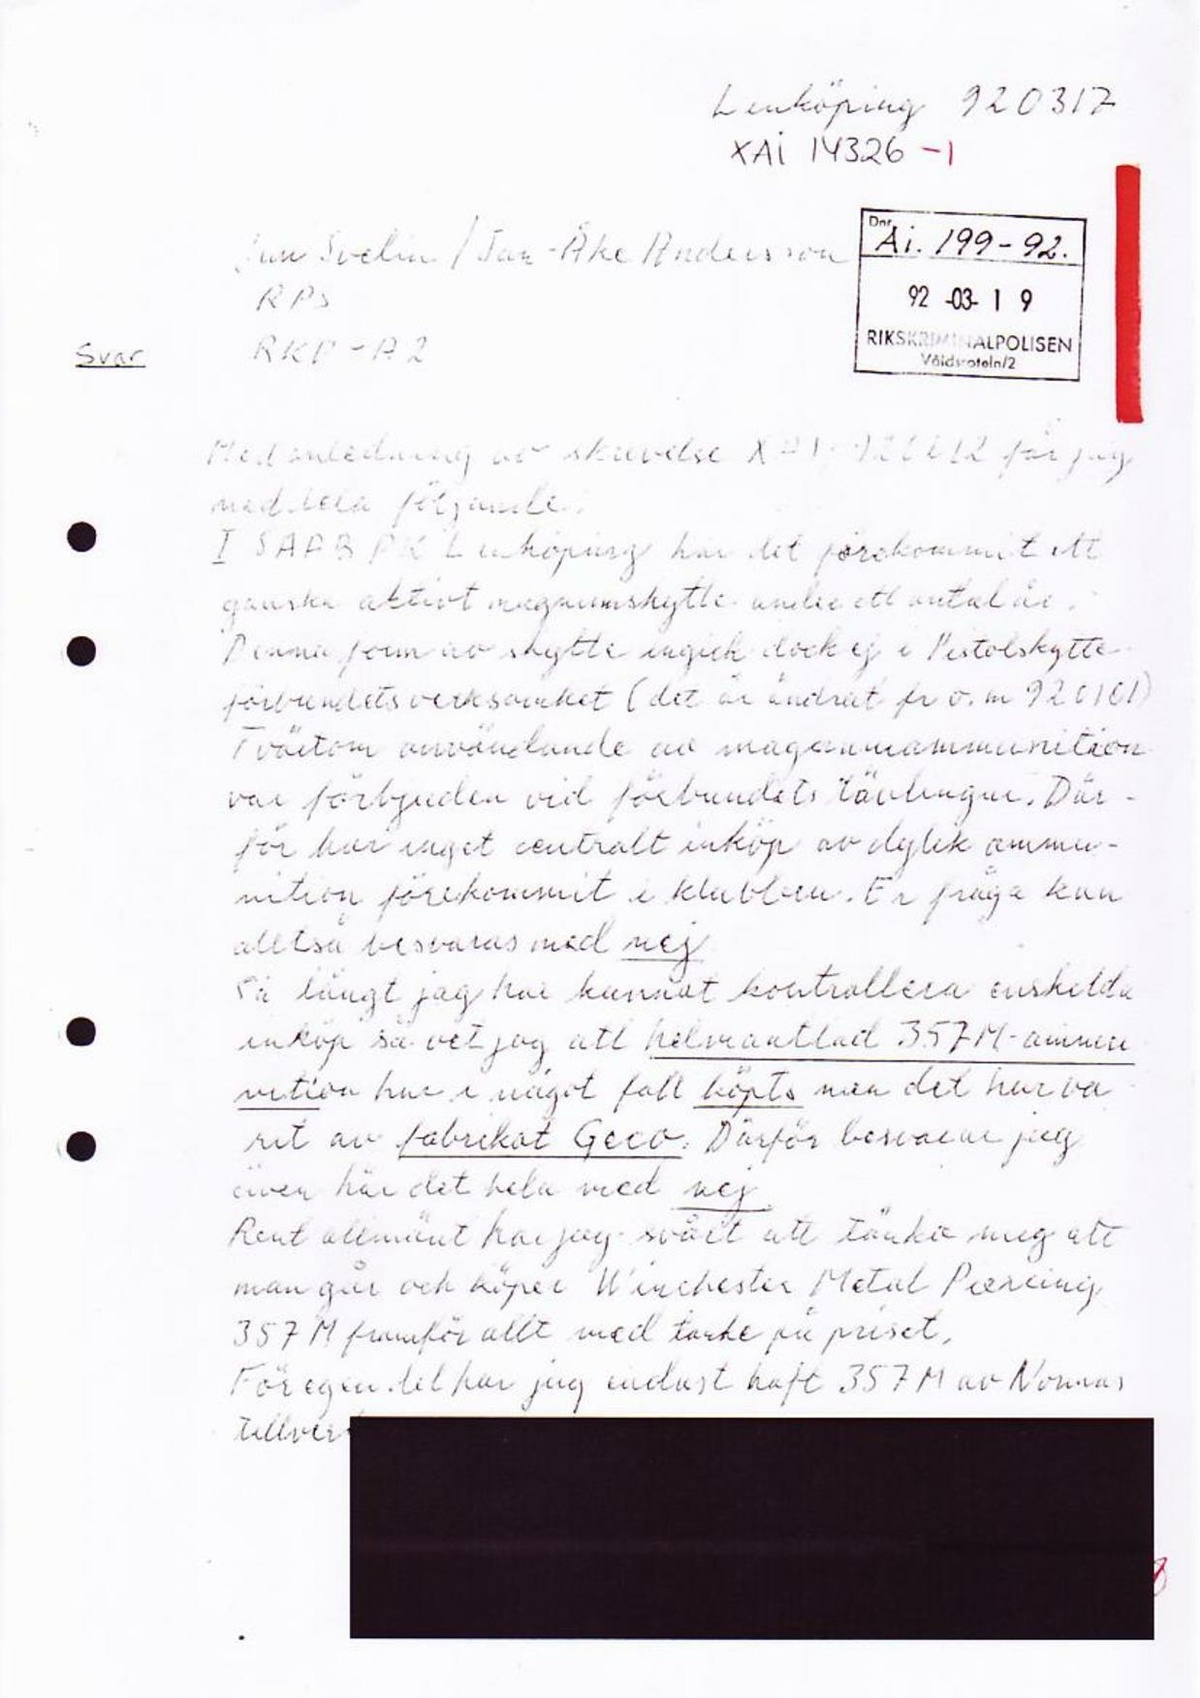 Pol-1994-03-17 XAI14326-01 Svar förfrågan 3572P SAAB PK.pdf